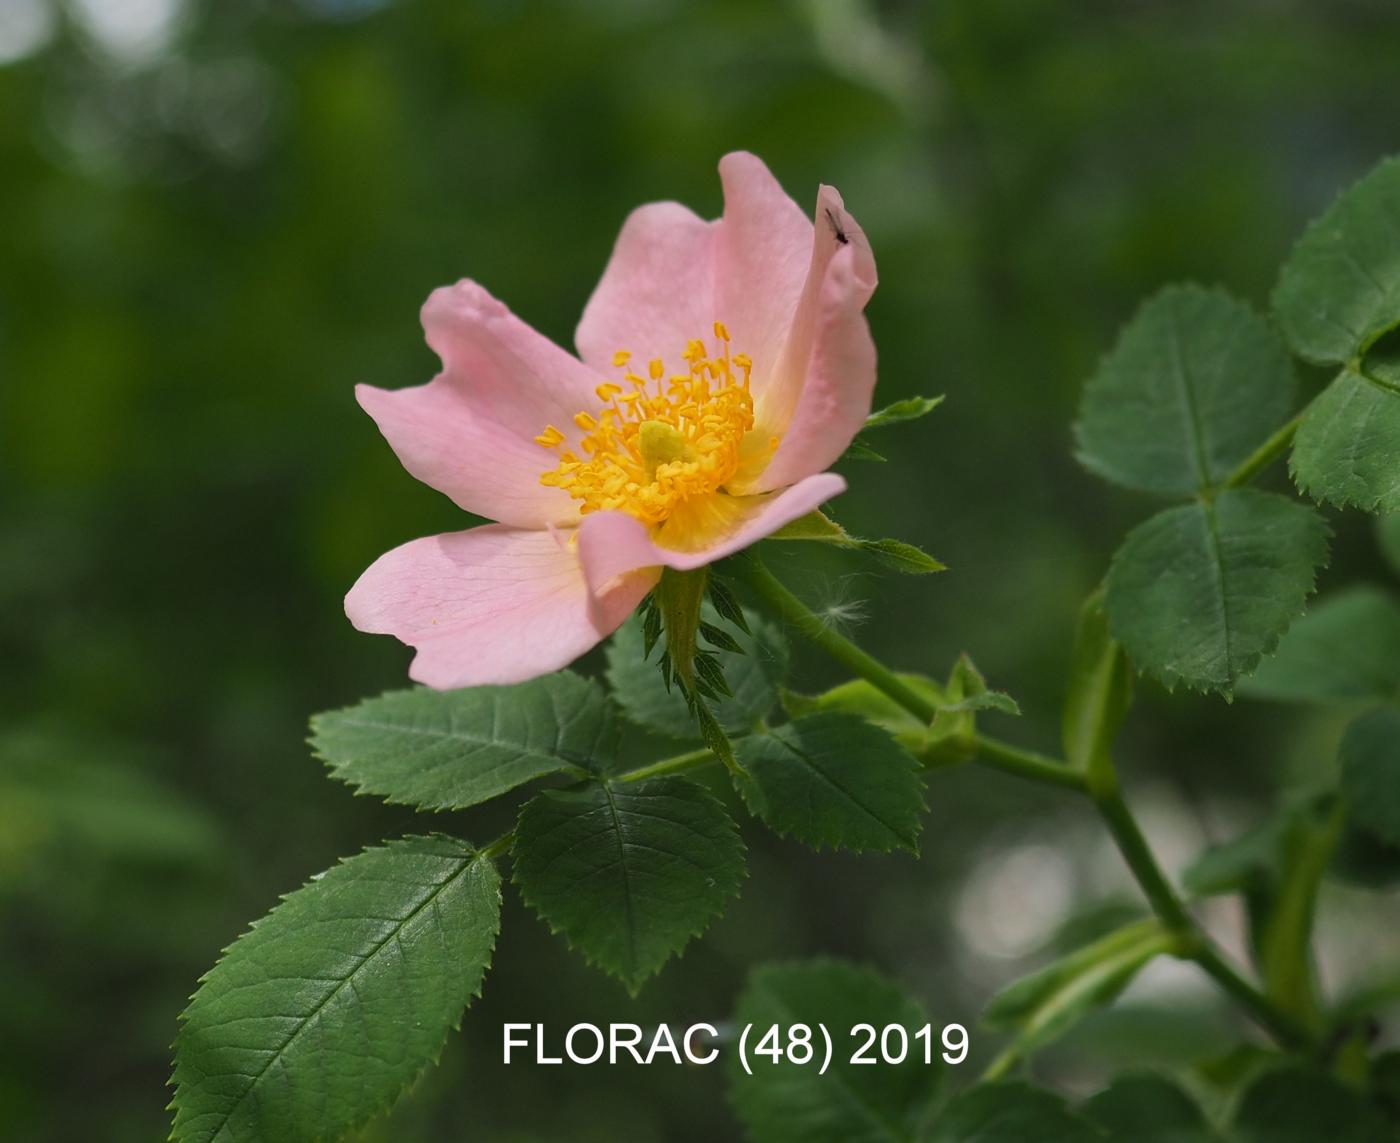 Rose, Dog flower